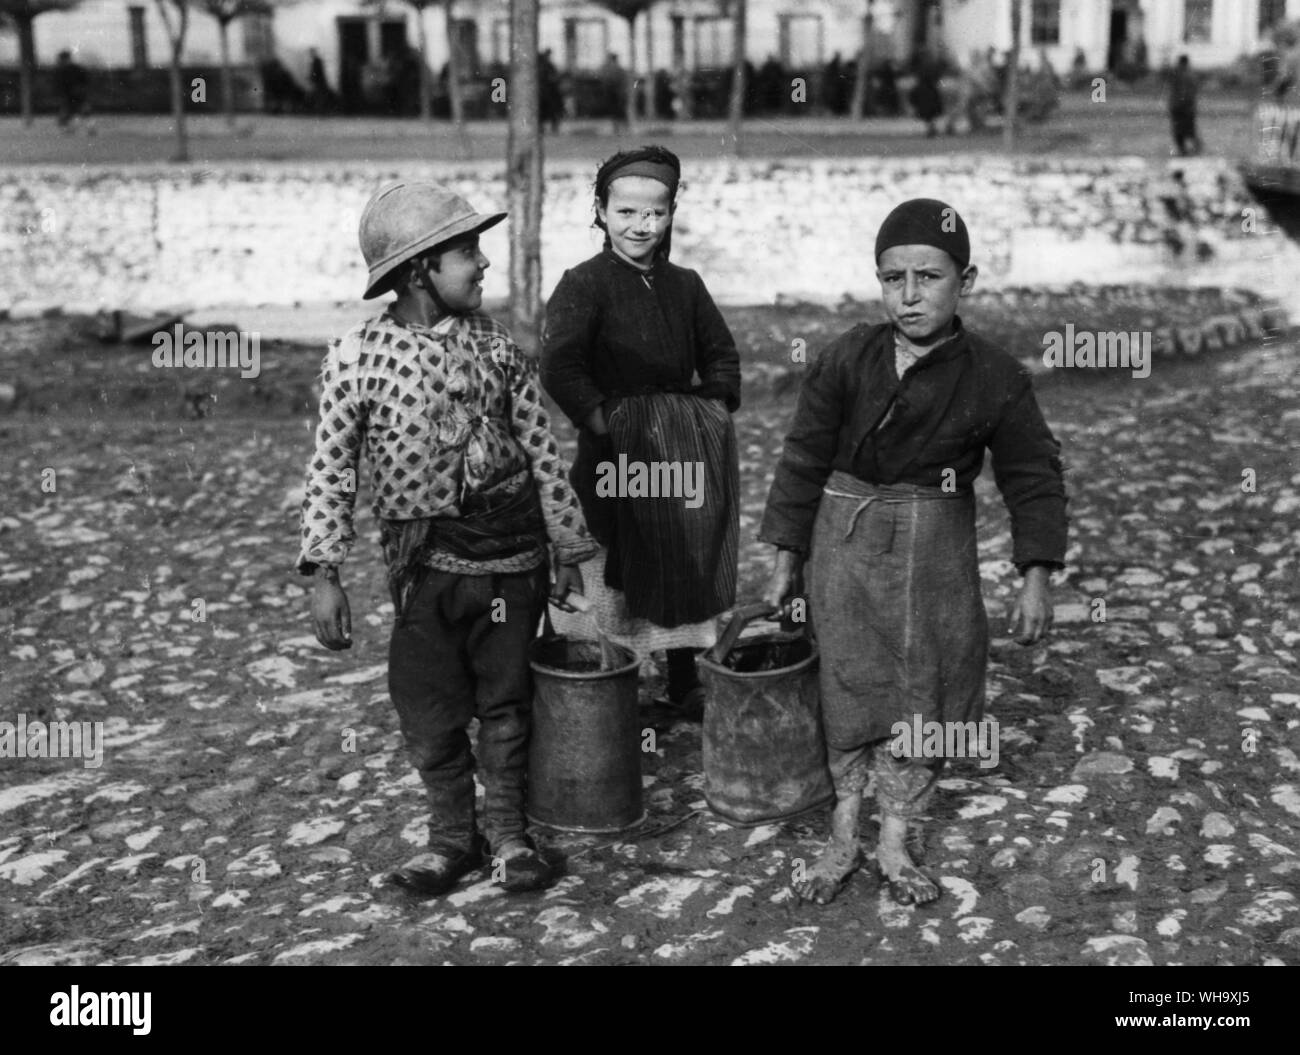 WW1 : Capture de Monastir. Les enfants vont chercher de l'eau pour les soldats. L'un porte un casque français. Novembre 1916. Banque D'Images